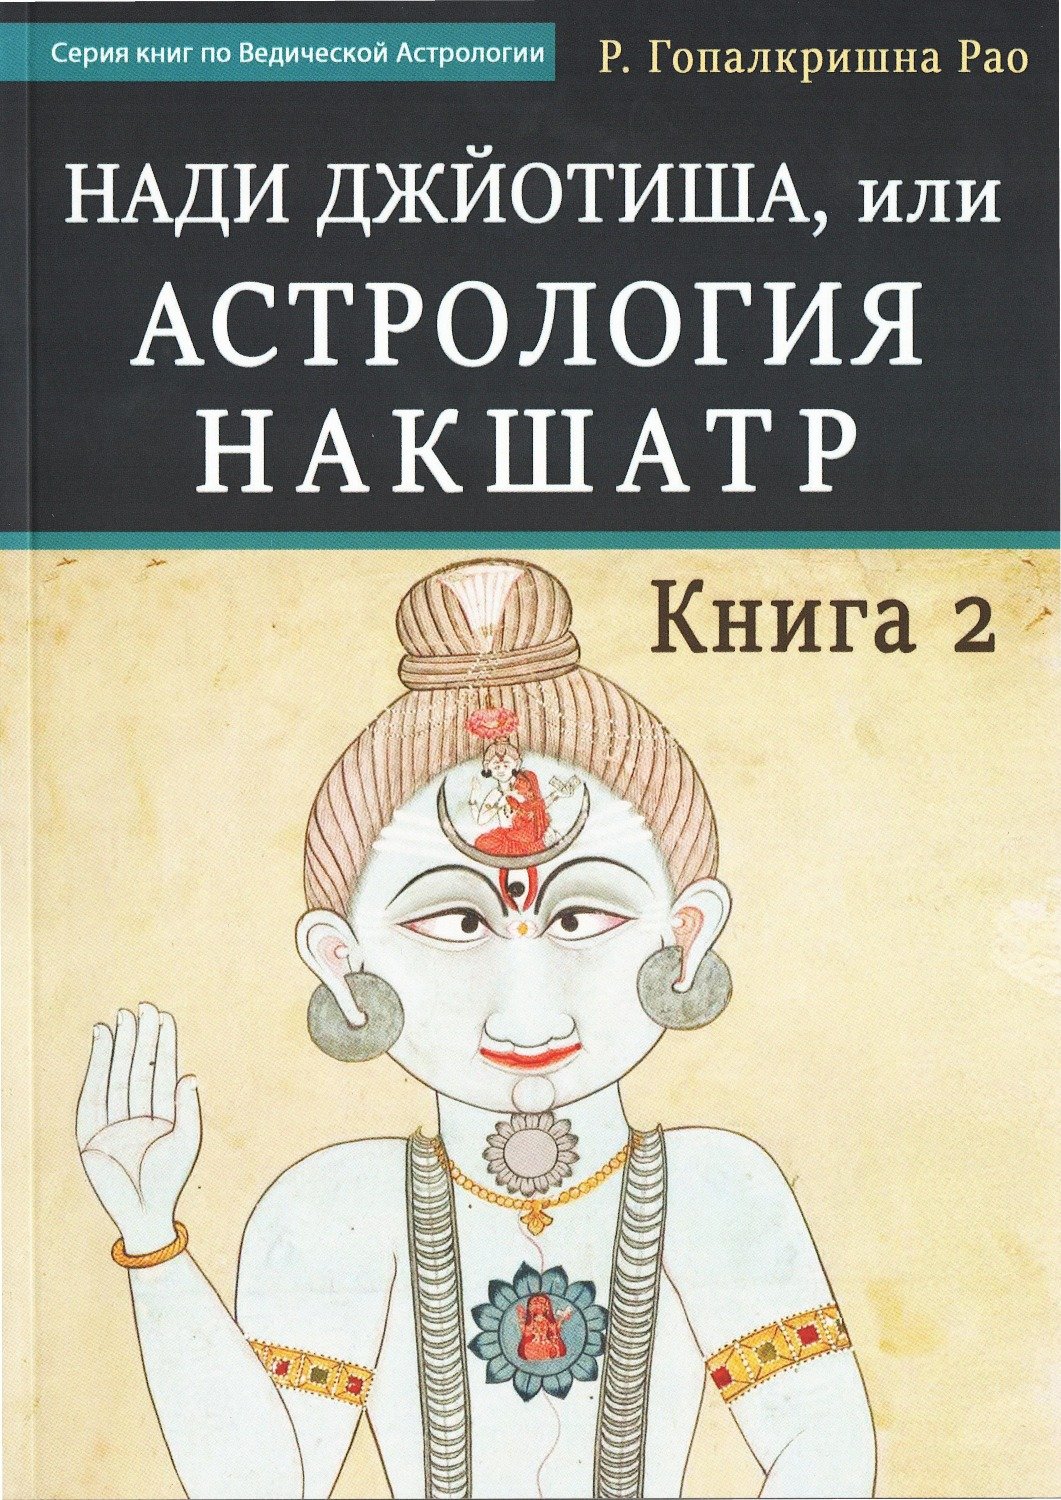 Нади Джйотиша, или Астрология Накшатр. Книга 2. 